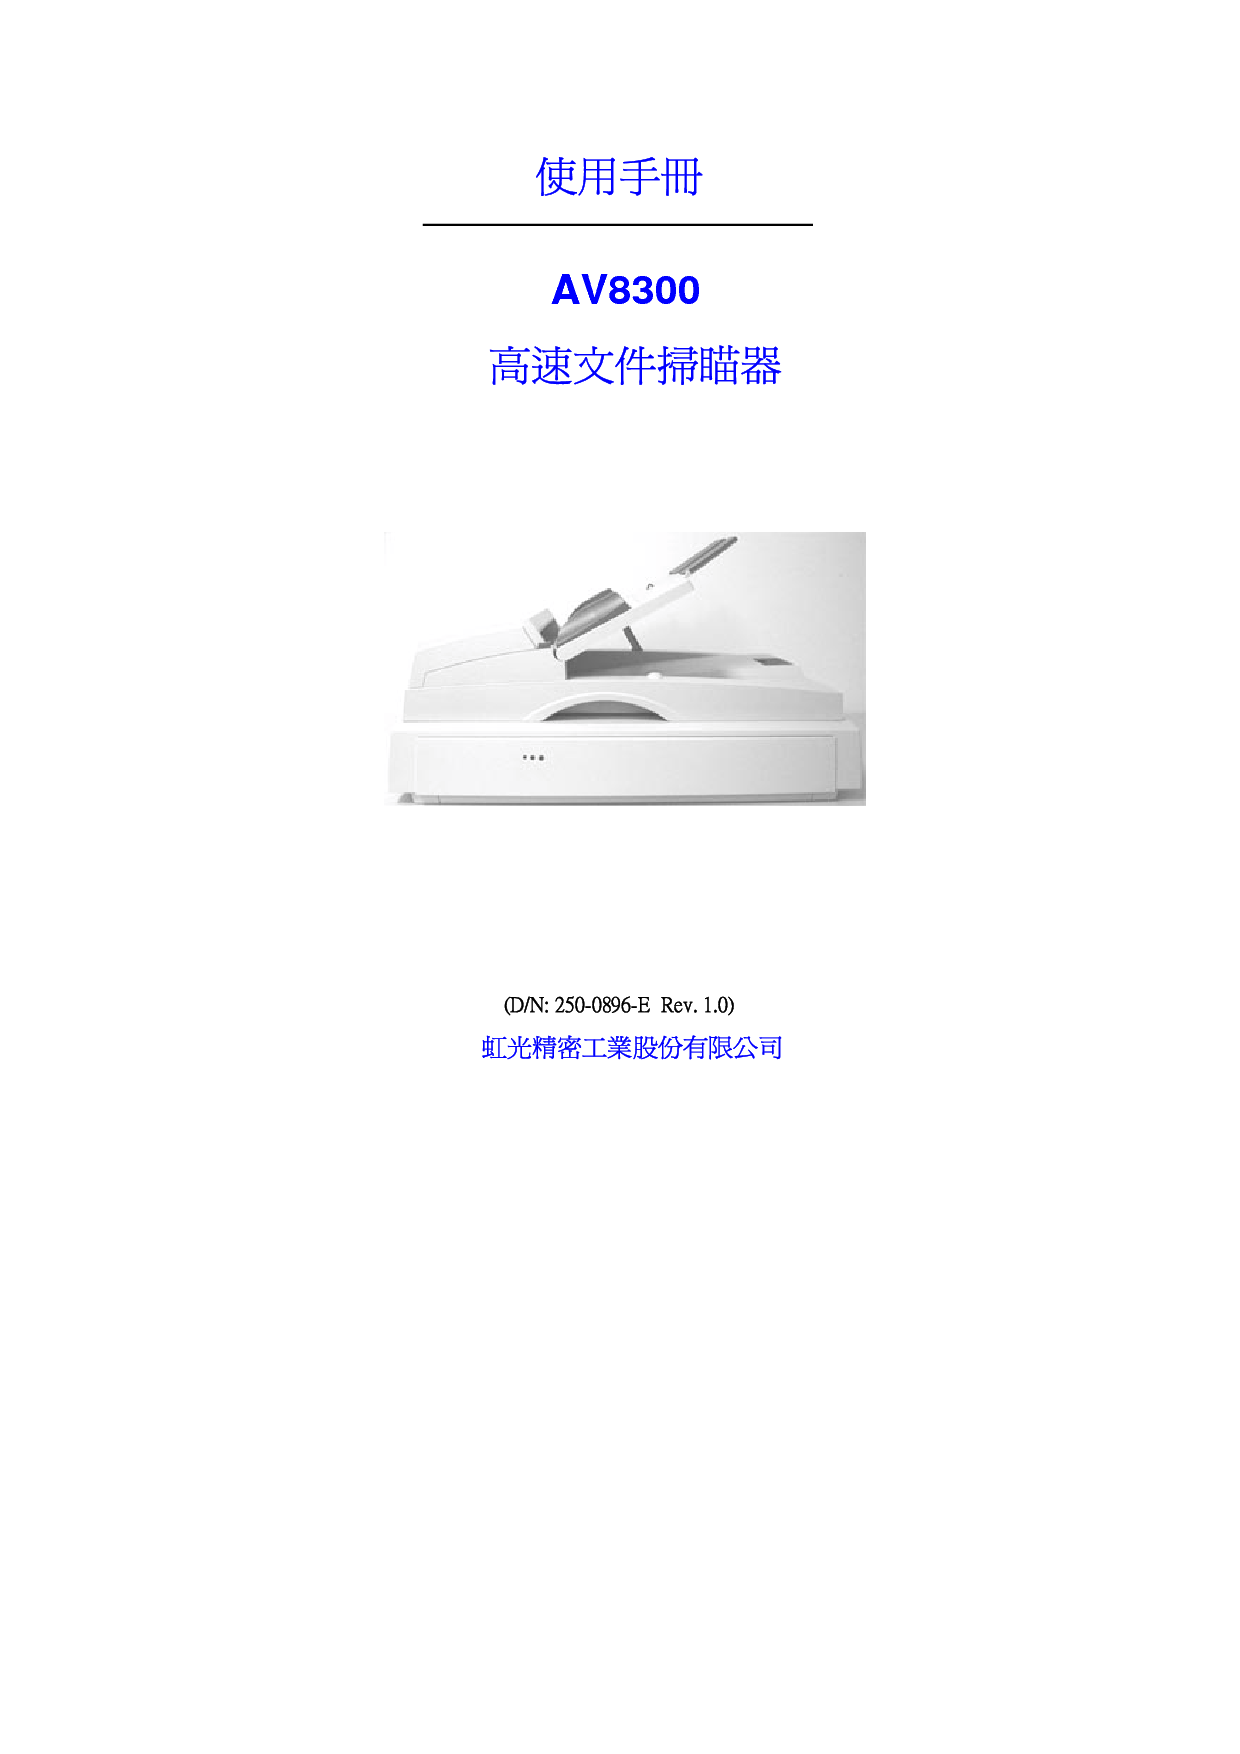 虹光 Avision AV8300 繁体 使用手册 封面